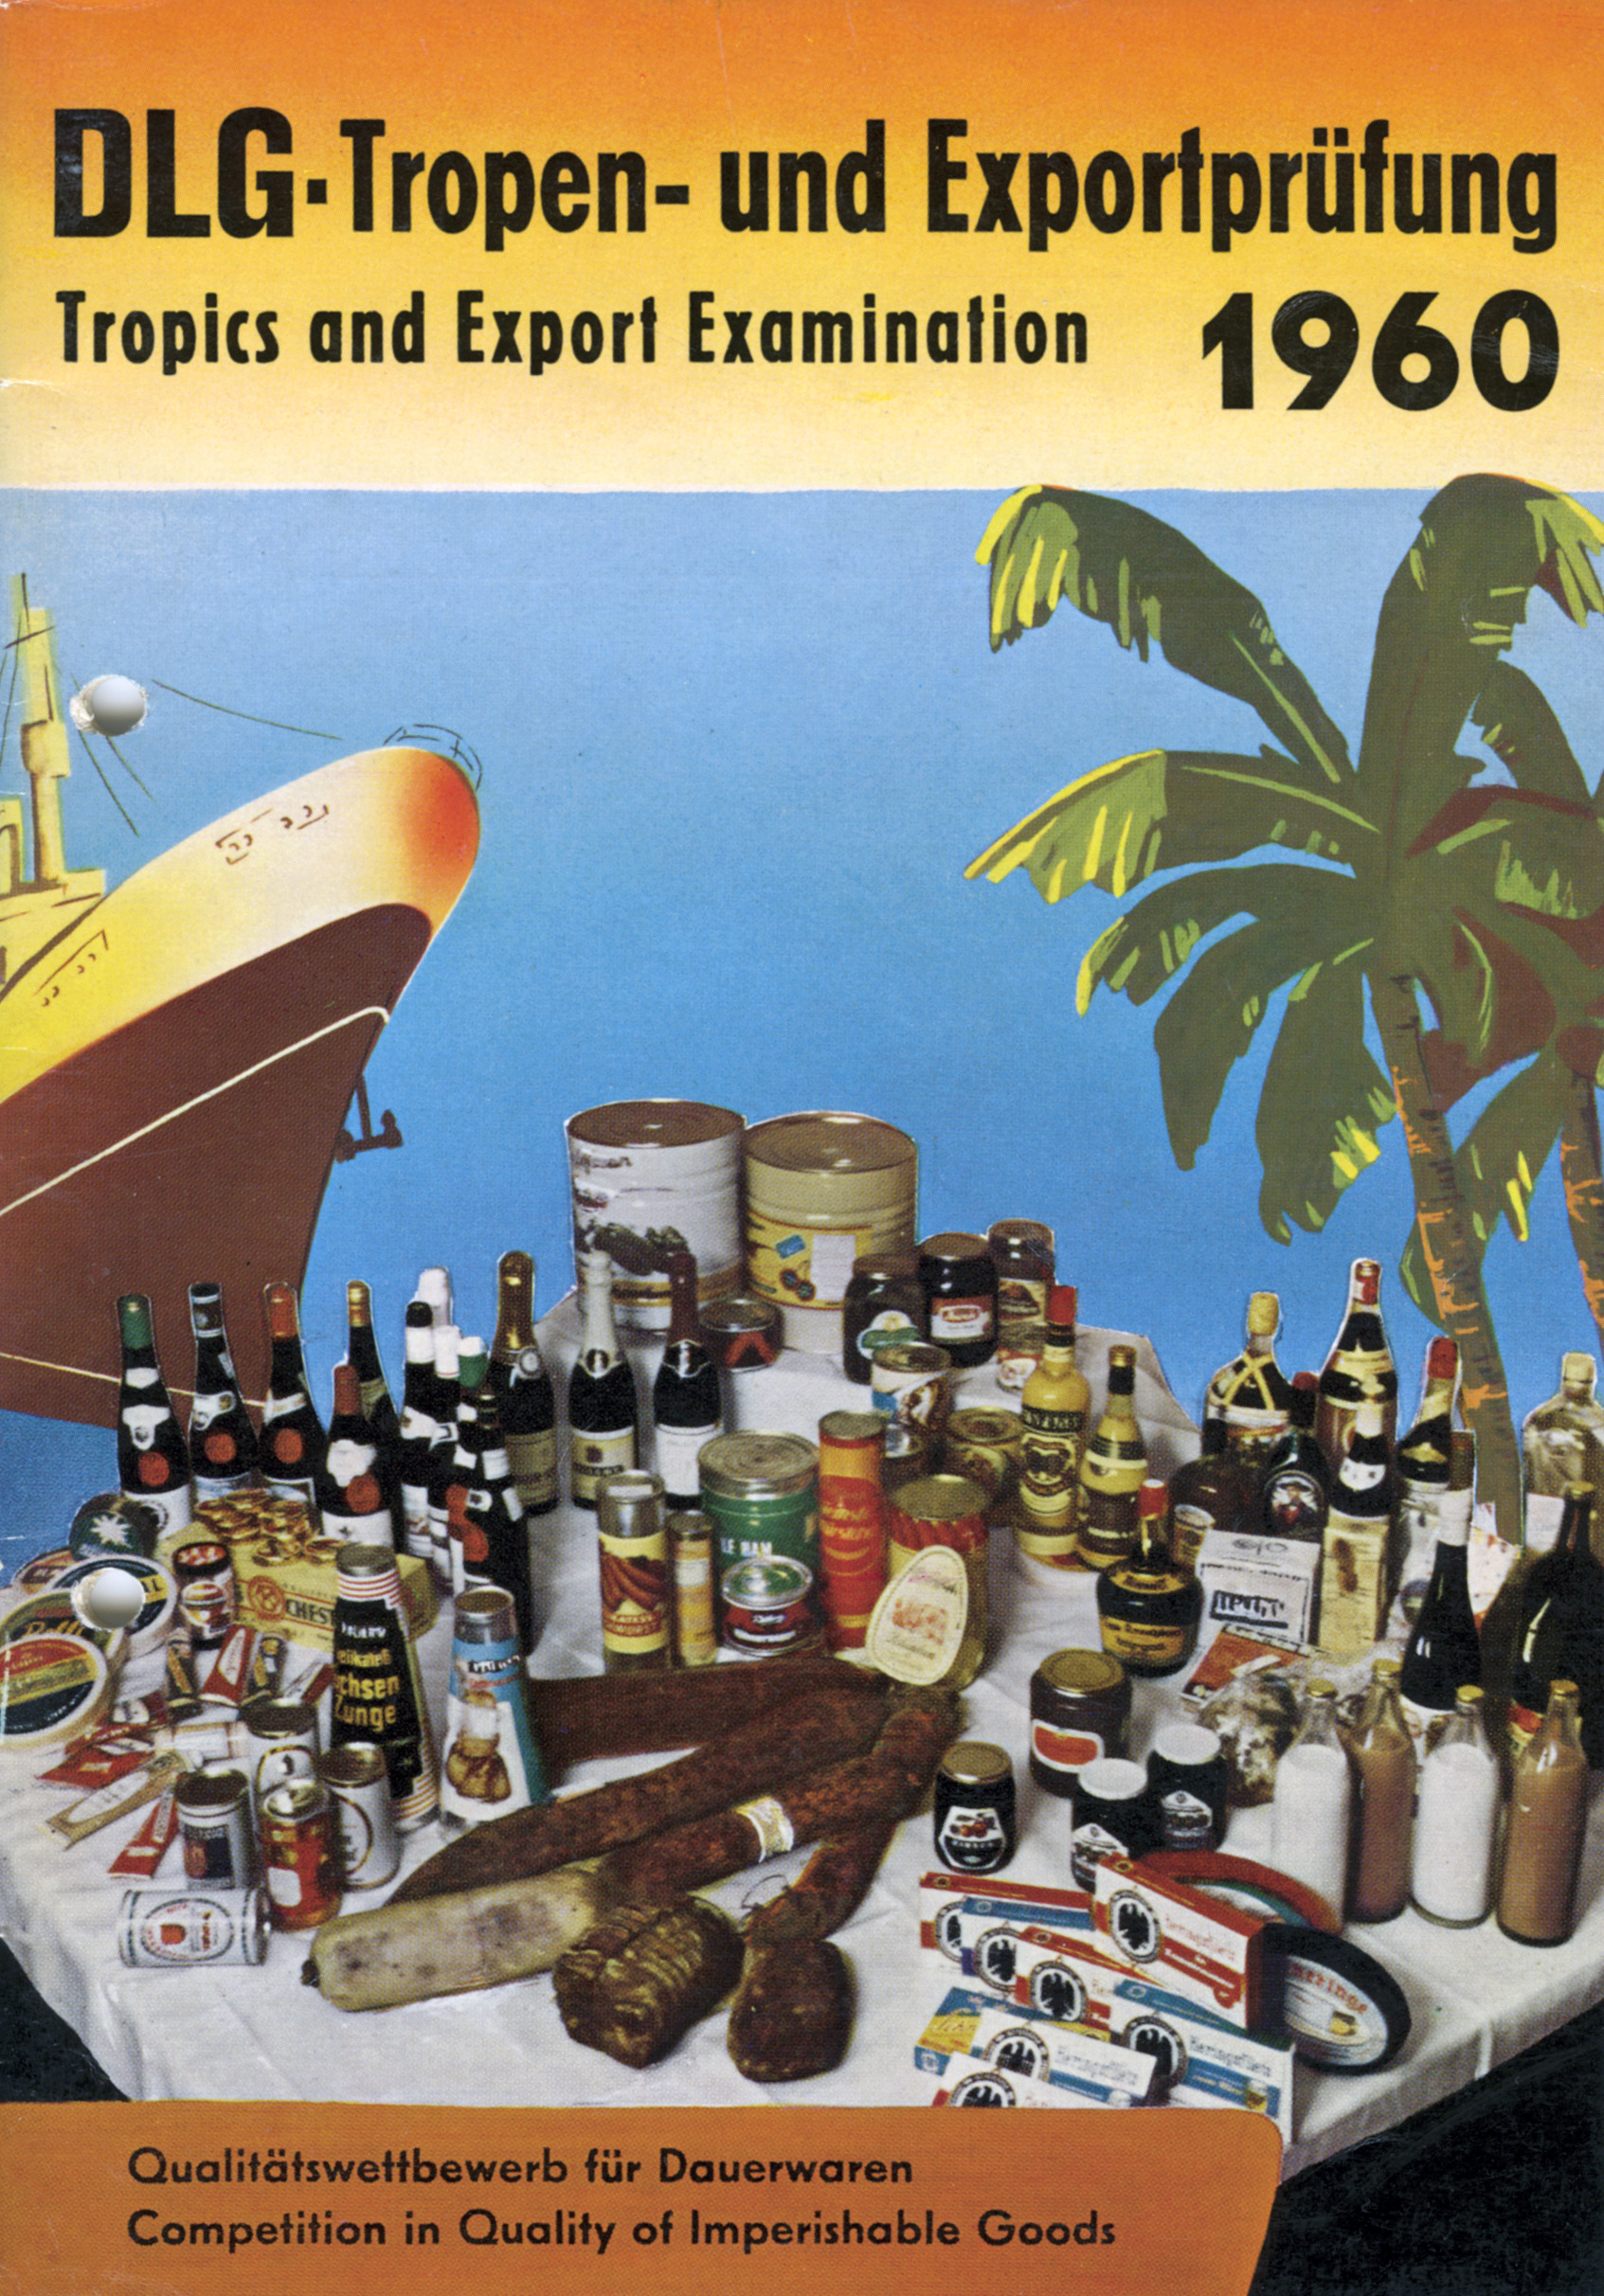 Tropen- und Exportprüfung 1960